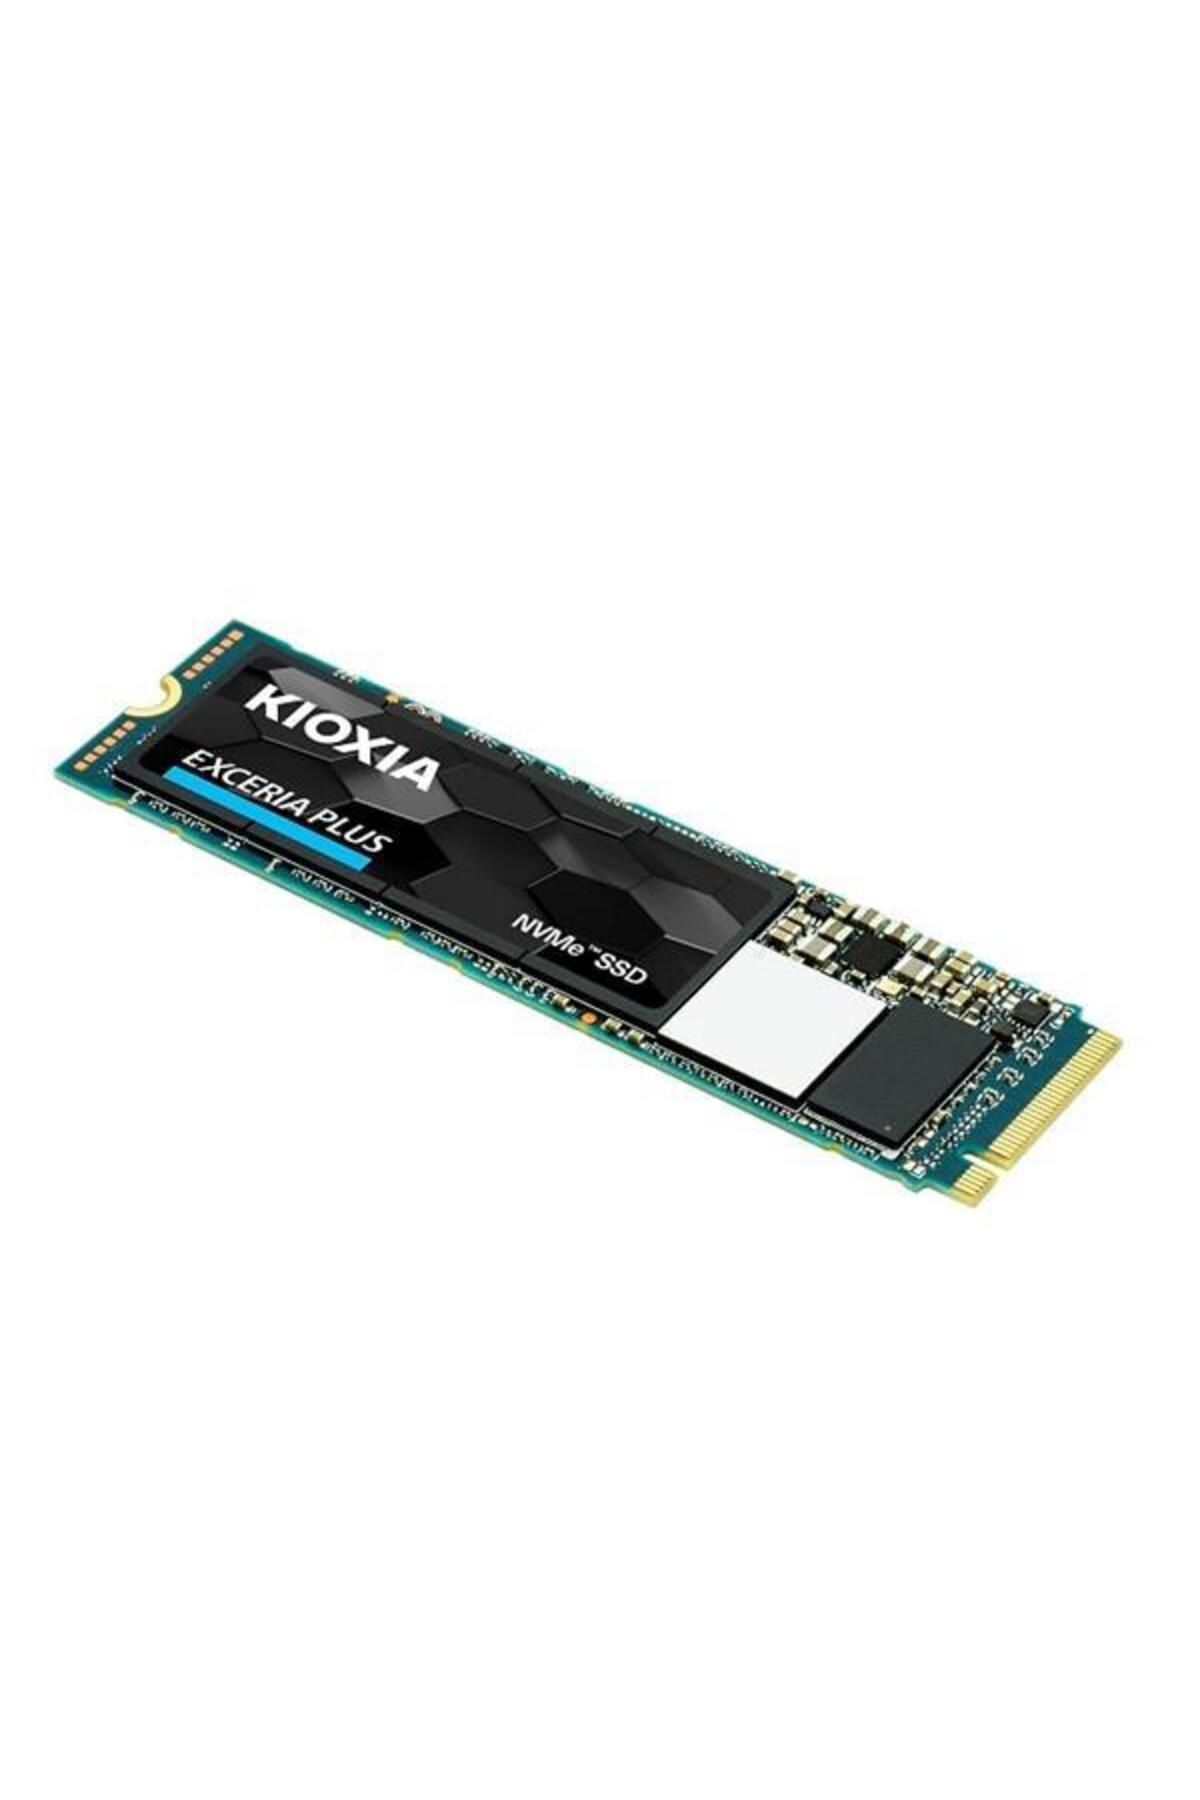 Kioxia 500gb Excerıa Lrc10z500gg8 1700- 1600mb/s M2 Pcıe Nvme Gen3 Disk